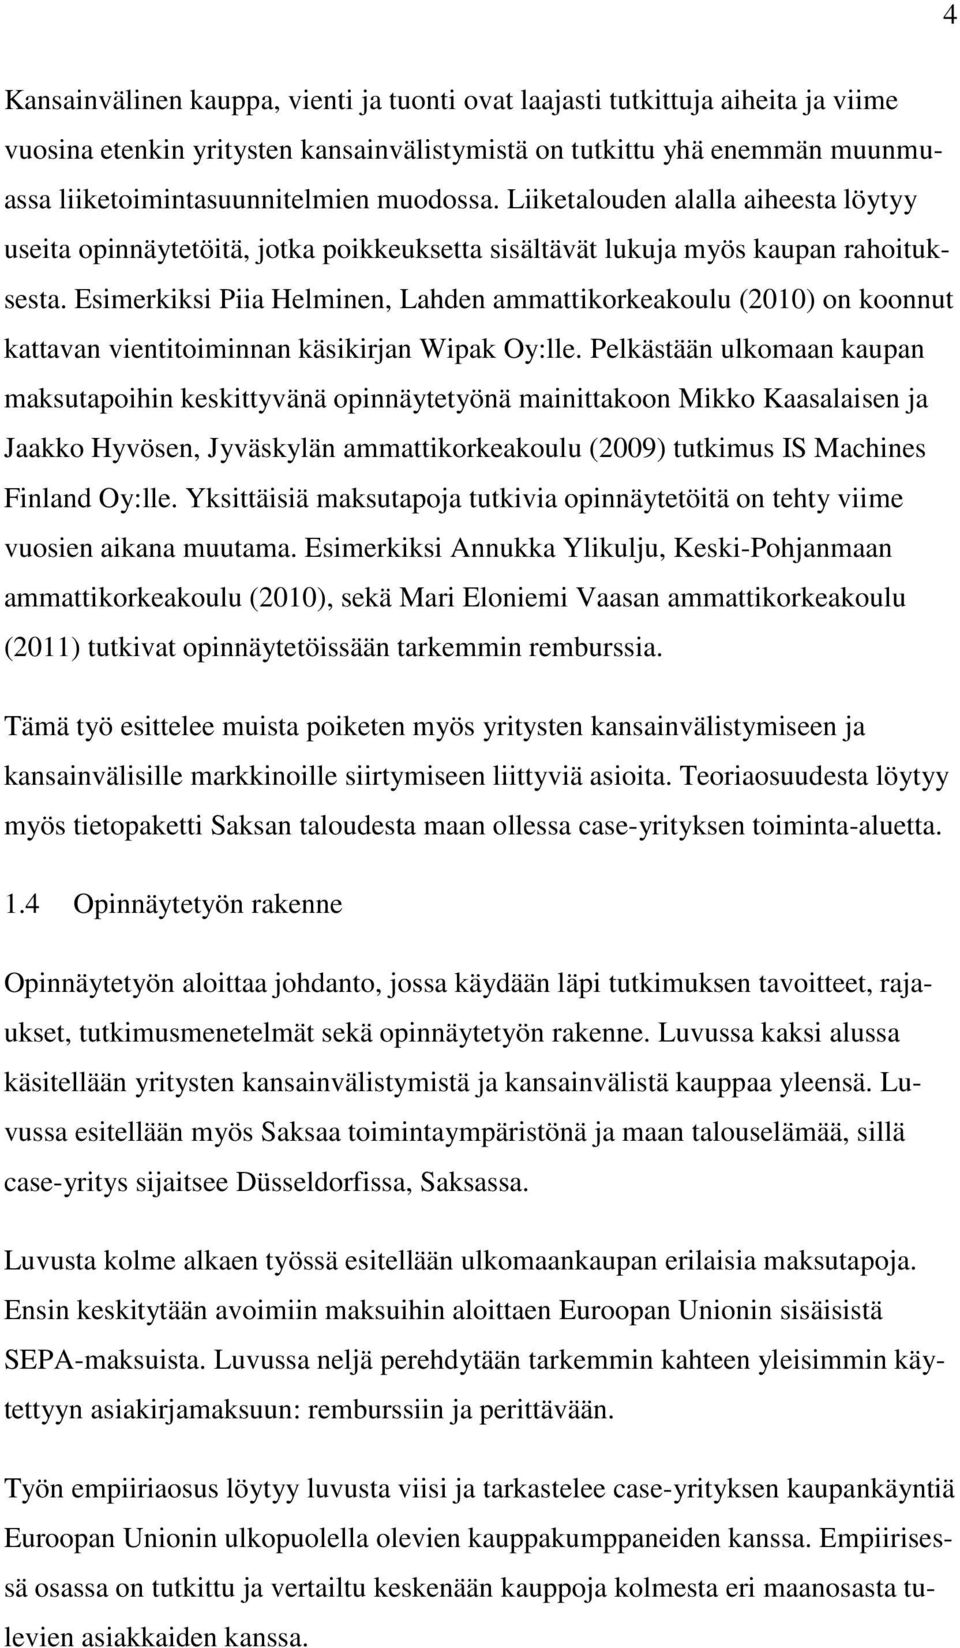 Esimerkiksi Piia Helminen, Lahden ammattikorkeakoulu (2010) on koonnut kattavan vientitoiminnan käsikirjan Wipak Oy:lle.